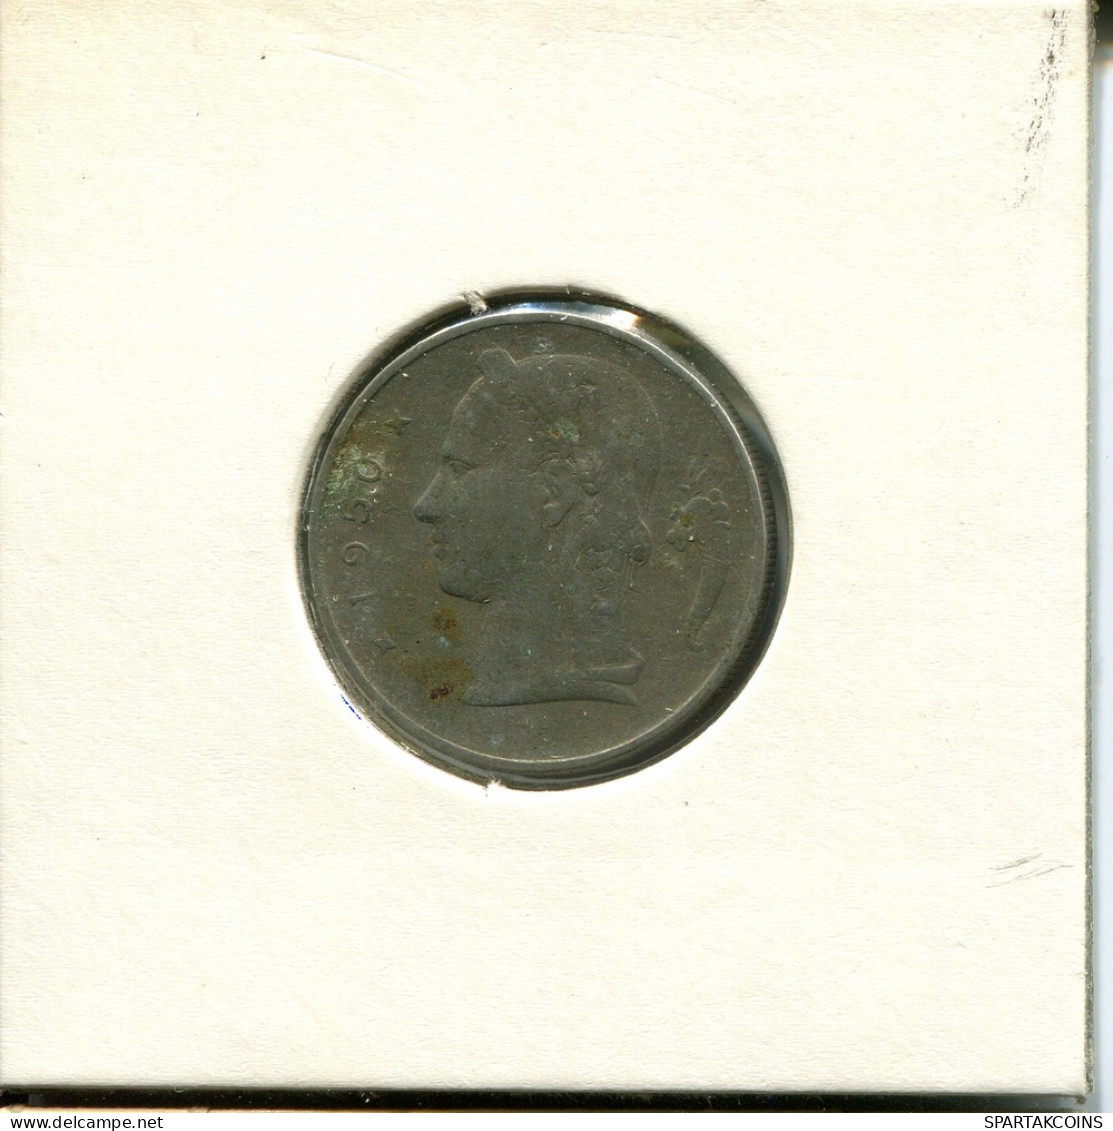 1 FRANC 1950 BELGIUM Coin #AT995.U - 1 Franc